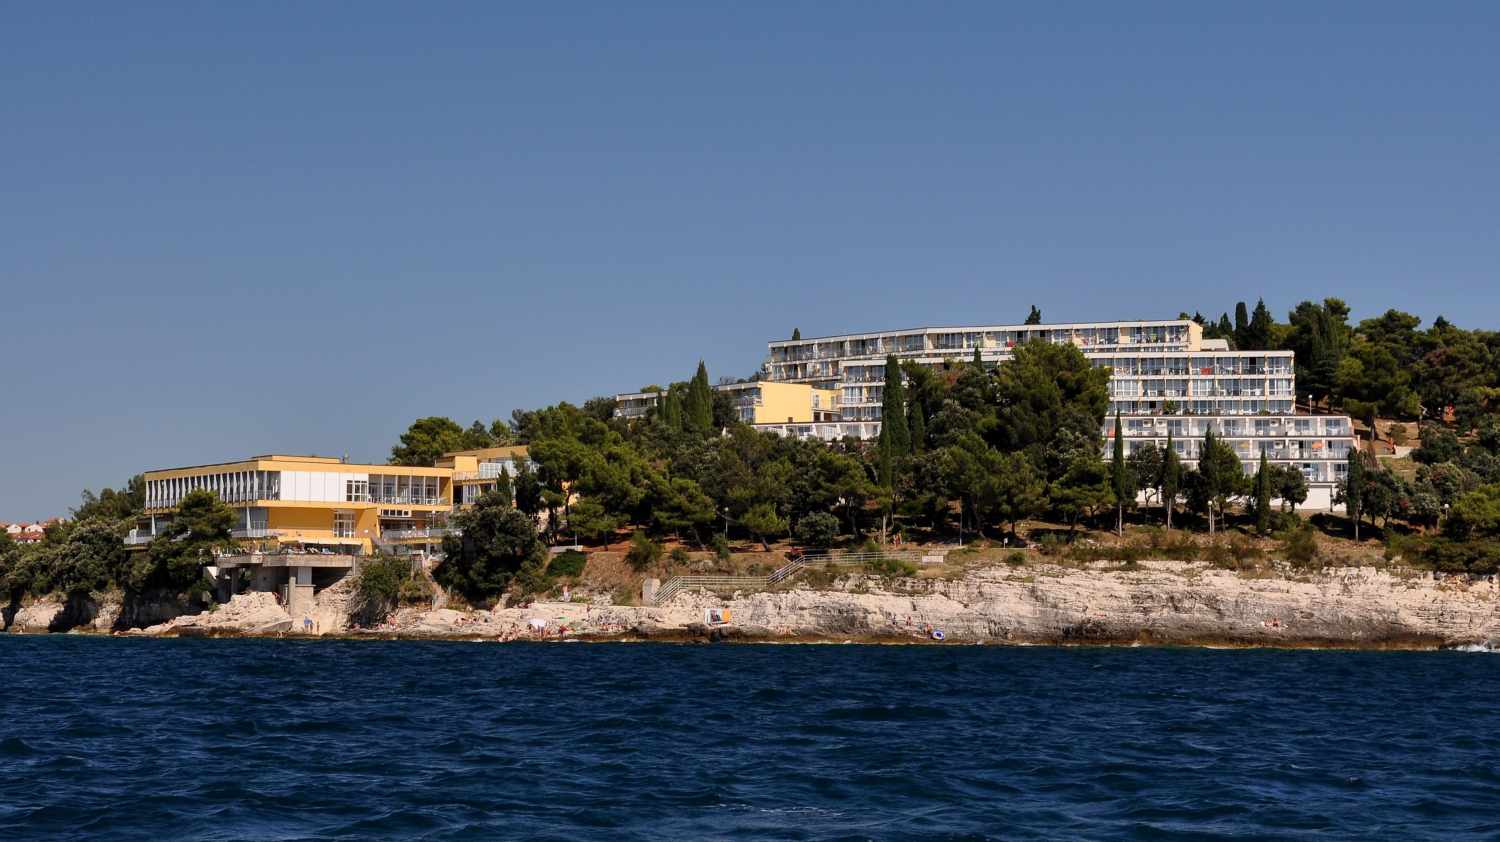 Splendid Resort, Pula Verudela, Istrië, Kroatië